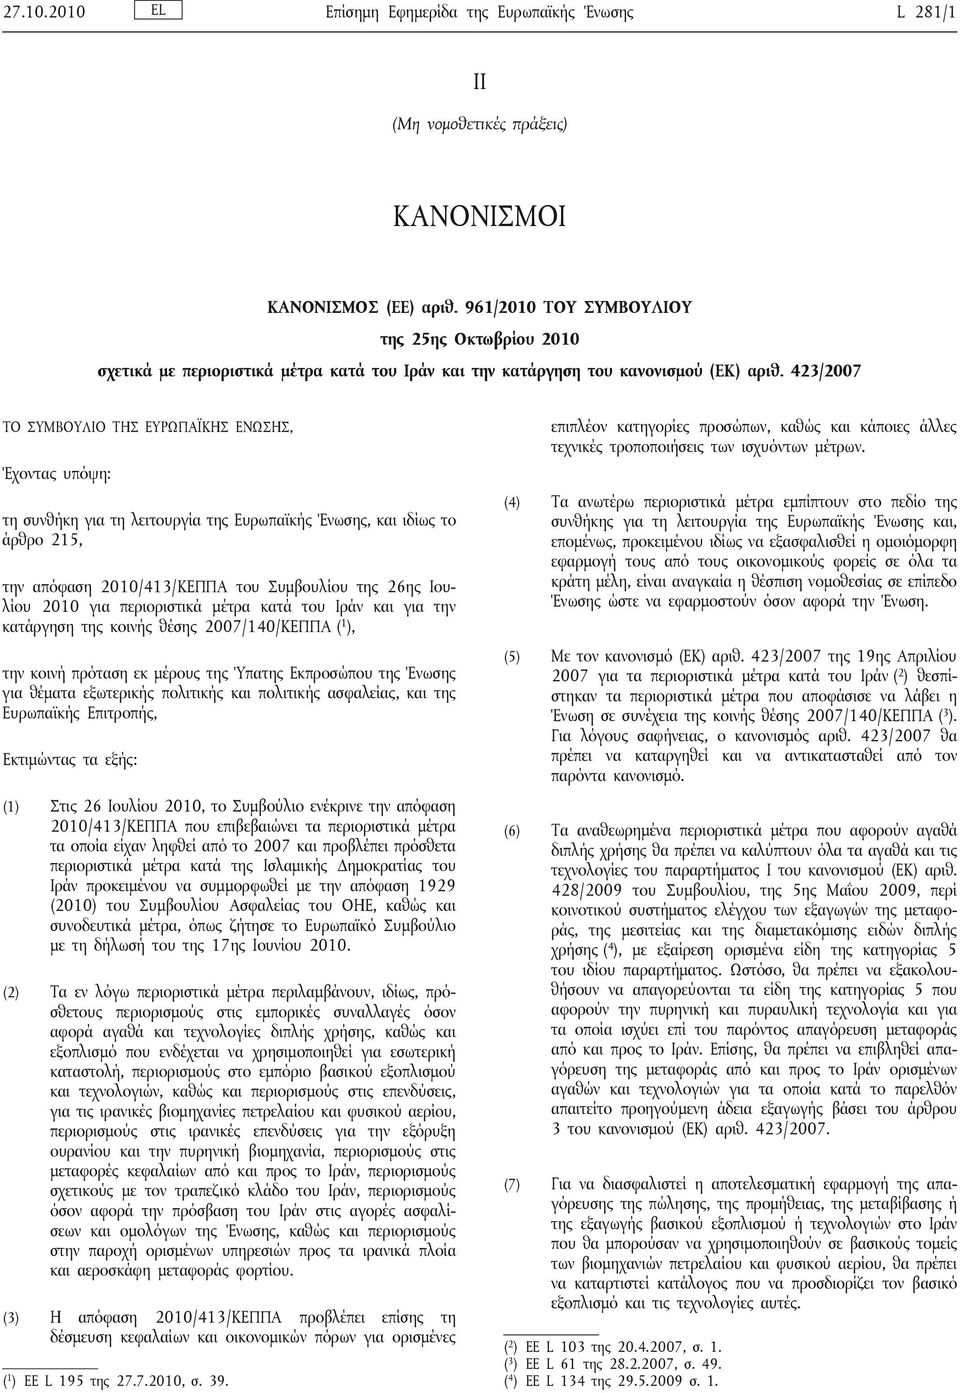 423/2007 ΤΟ ΣΥΜΒΟΥΛΙΟ ΤΗΣ ΕΥΡΩΠΑΪΚΗΣ ΕΝΩΣΗΣ, Έχοντας υπόψη: τη συνθήκη για τη λειτουργία της Ευρωπαϊκής Ένωσης, και ιδίως το άρθρο 215, την απόφαση 2010/413/ΚΕΠΠΑ του Συμβουλίου της 26ης Ιουλίου 2010